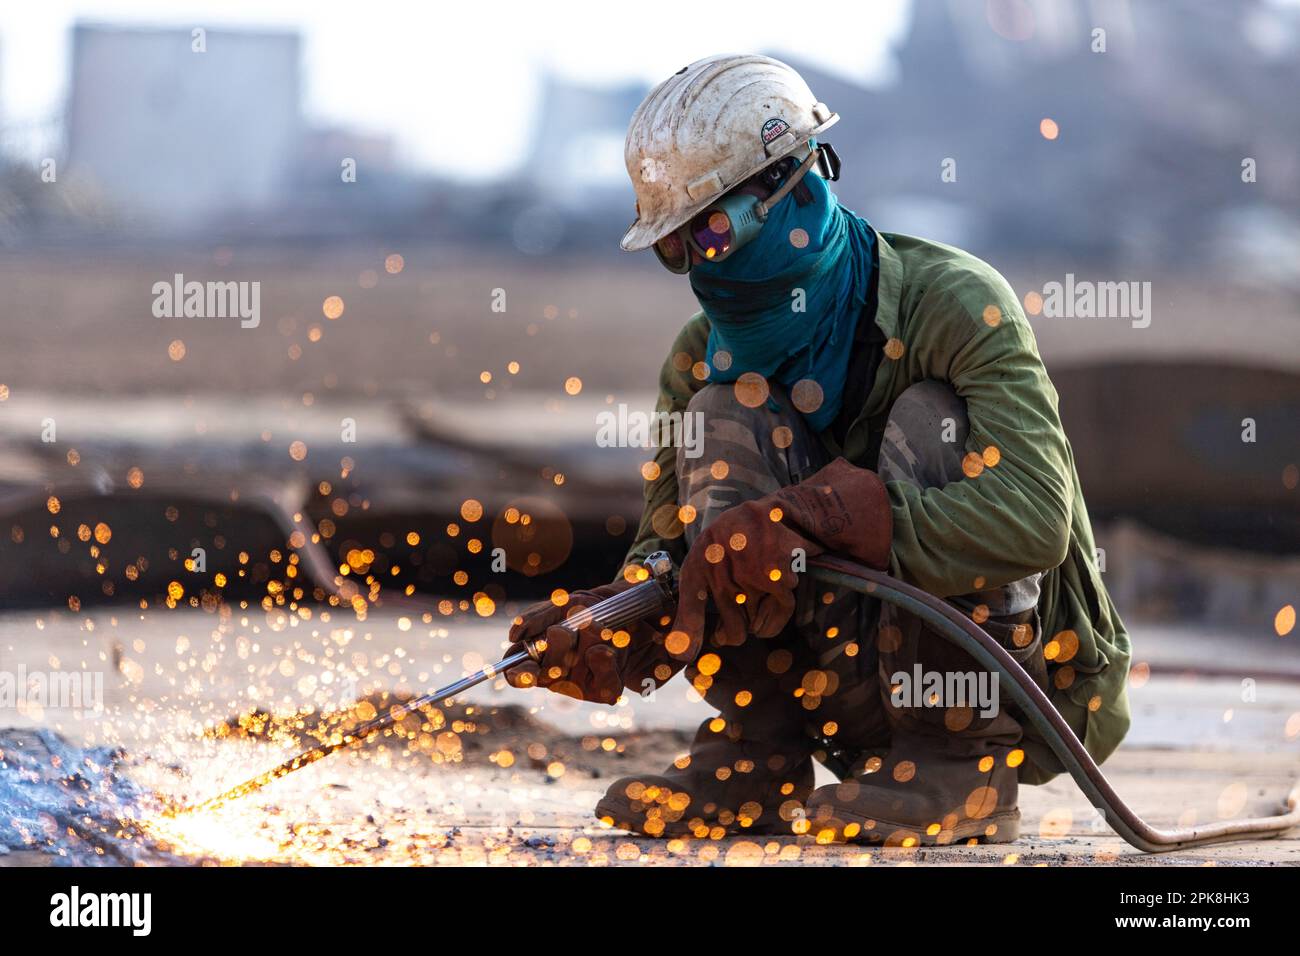 Gadani Pakistan août 2021, un travailleur portant un casque de sécurité jaune coupant une tôle avec un arc de soudage au chantier de démolition de navire de Gadani Banque D'Images